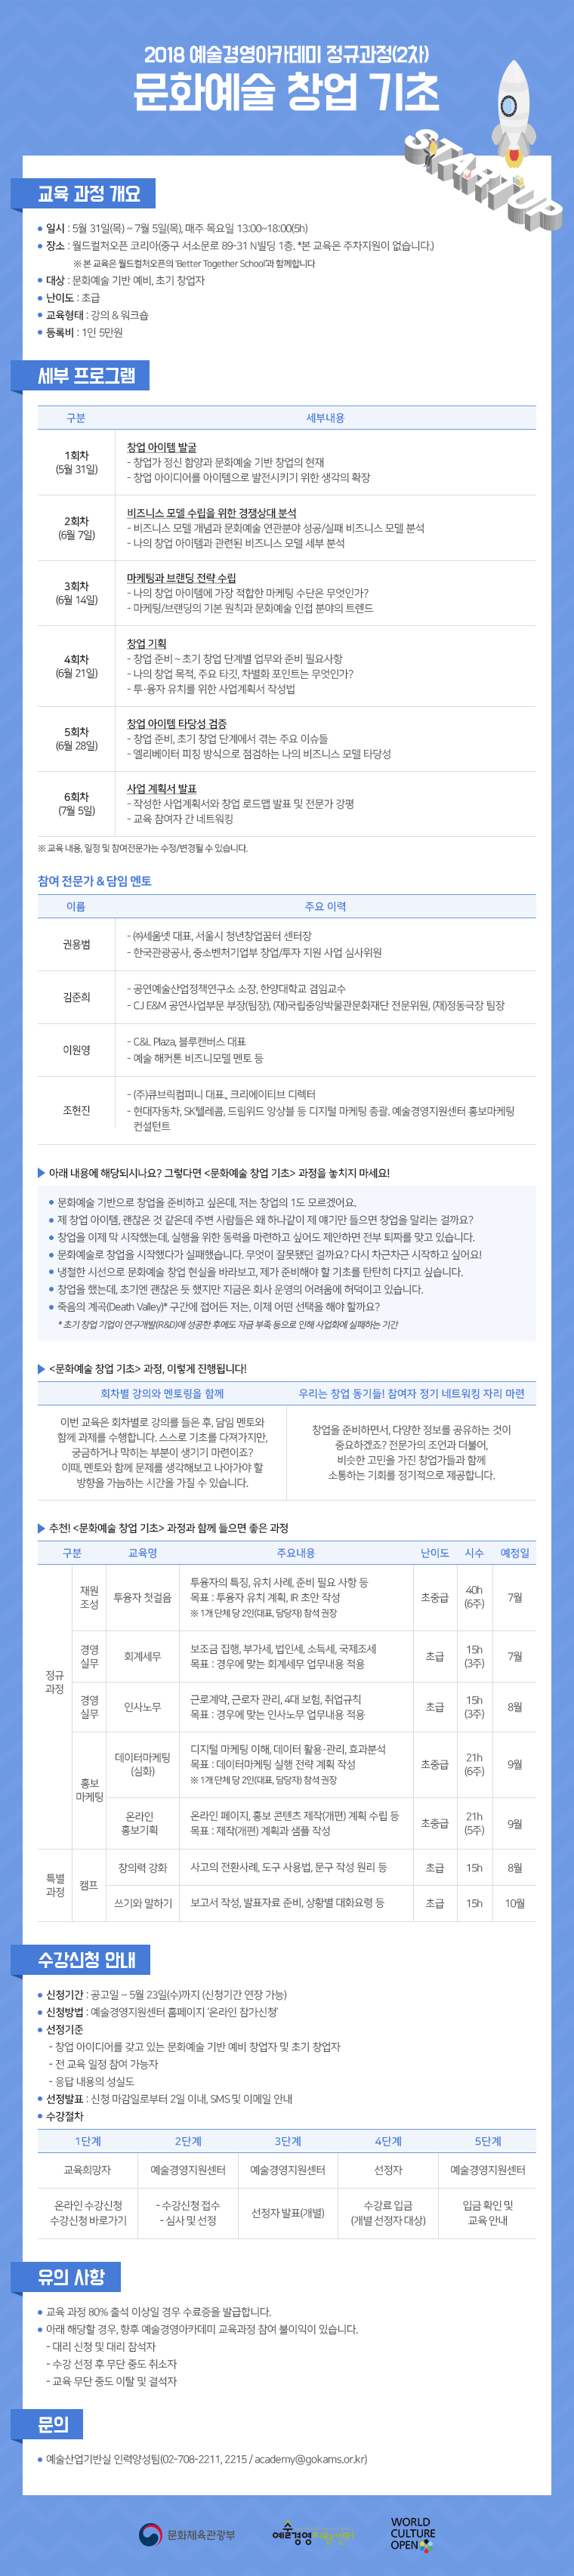 [2018 예술경영아카데미 정규과정 2차] 아트펀드레이저 양성(심화) 과정